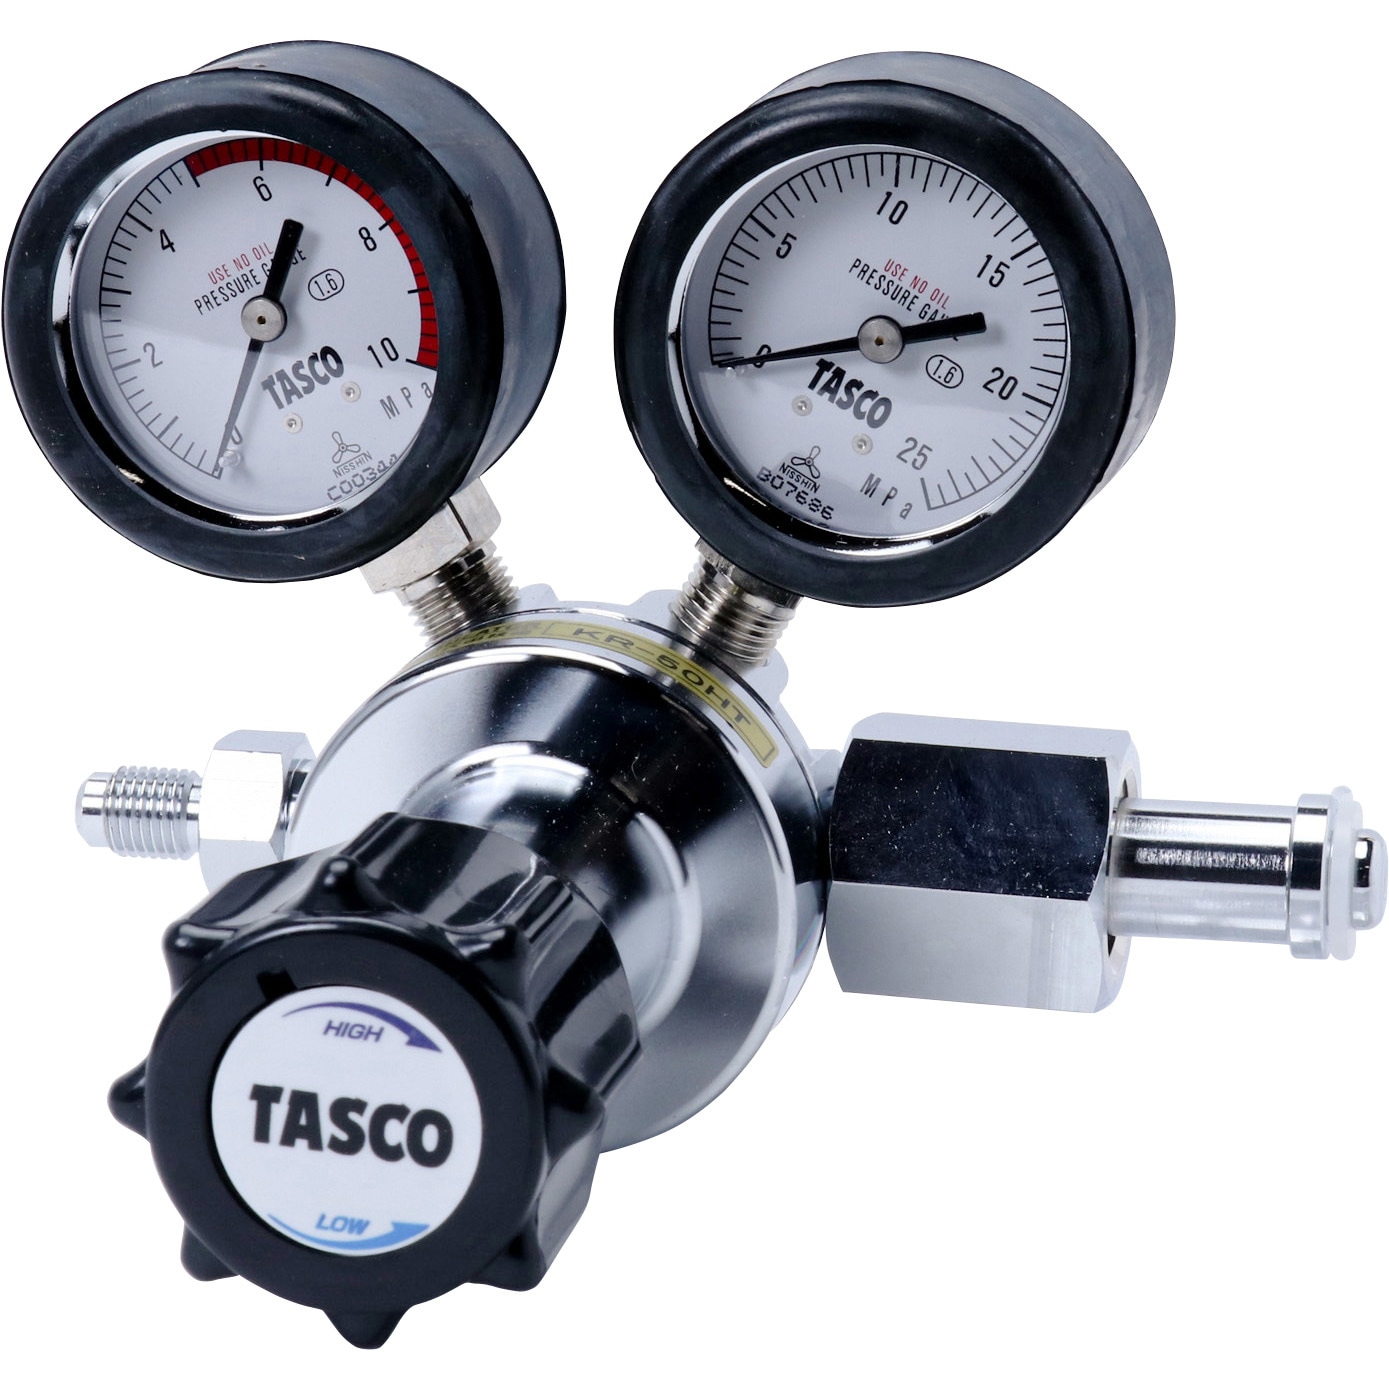 TASCO（タスコ）チッソガス調整器 TA380N-